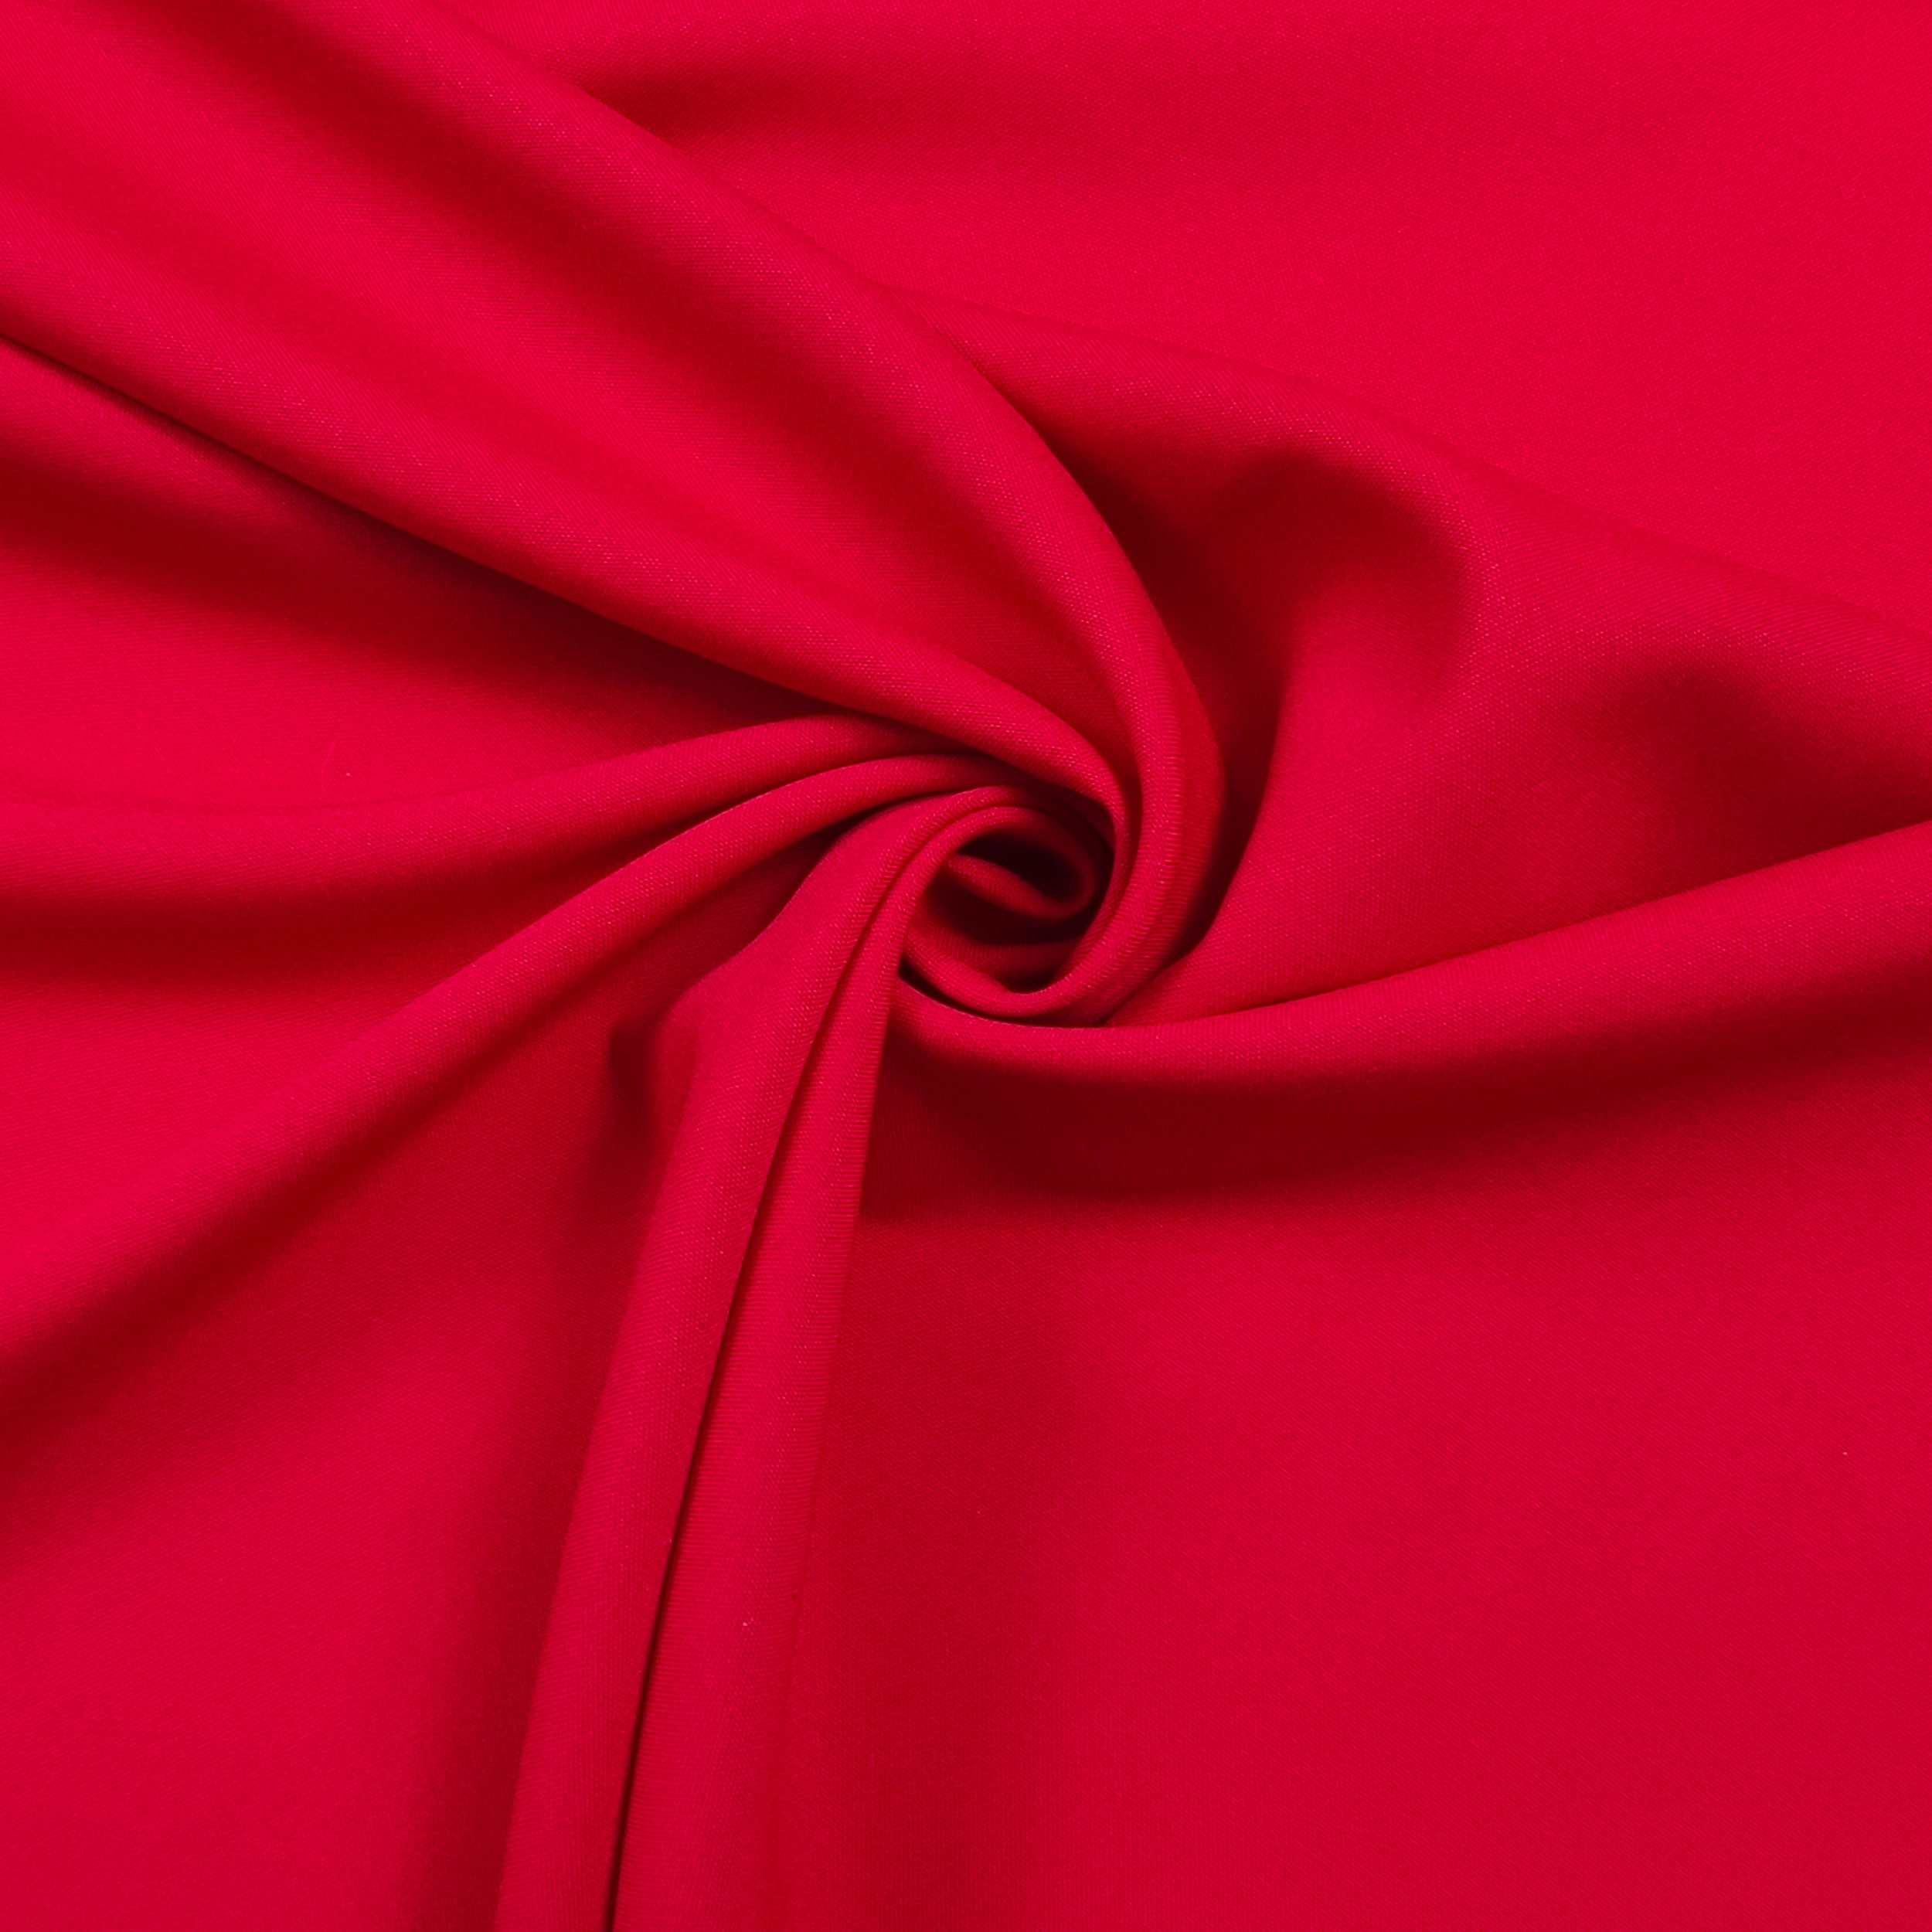 tessuto per abbigliamento rosso